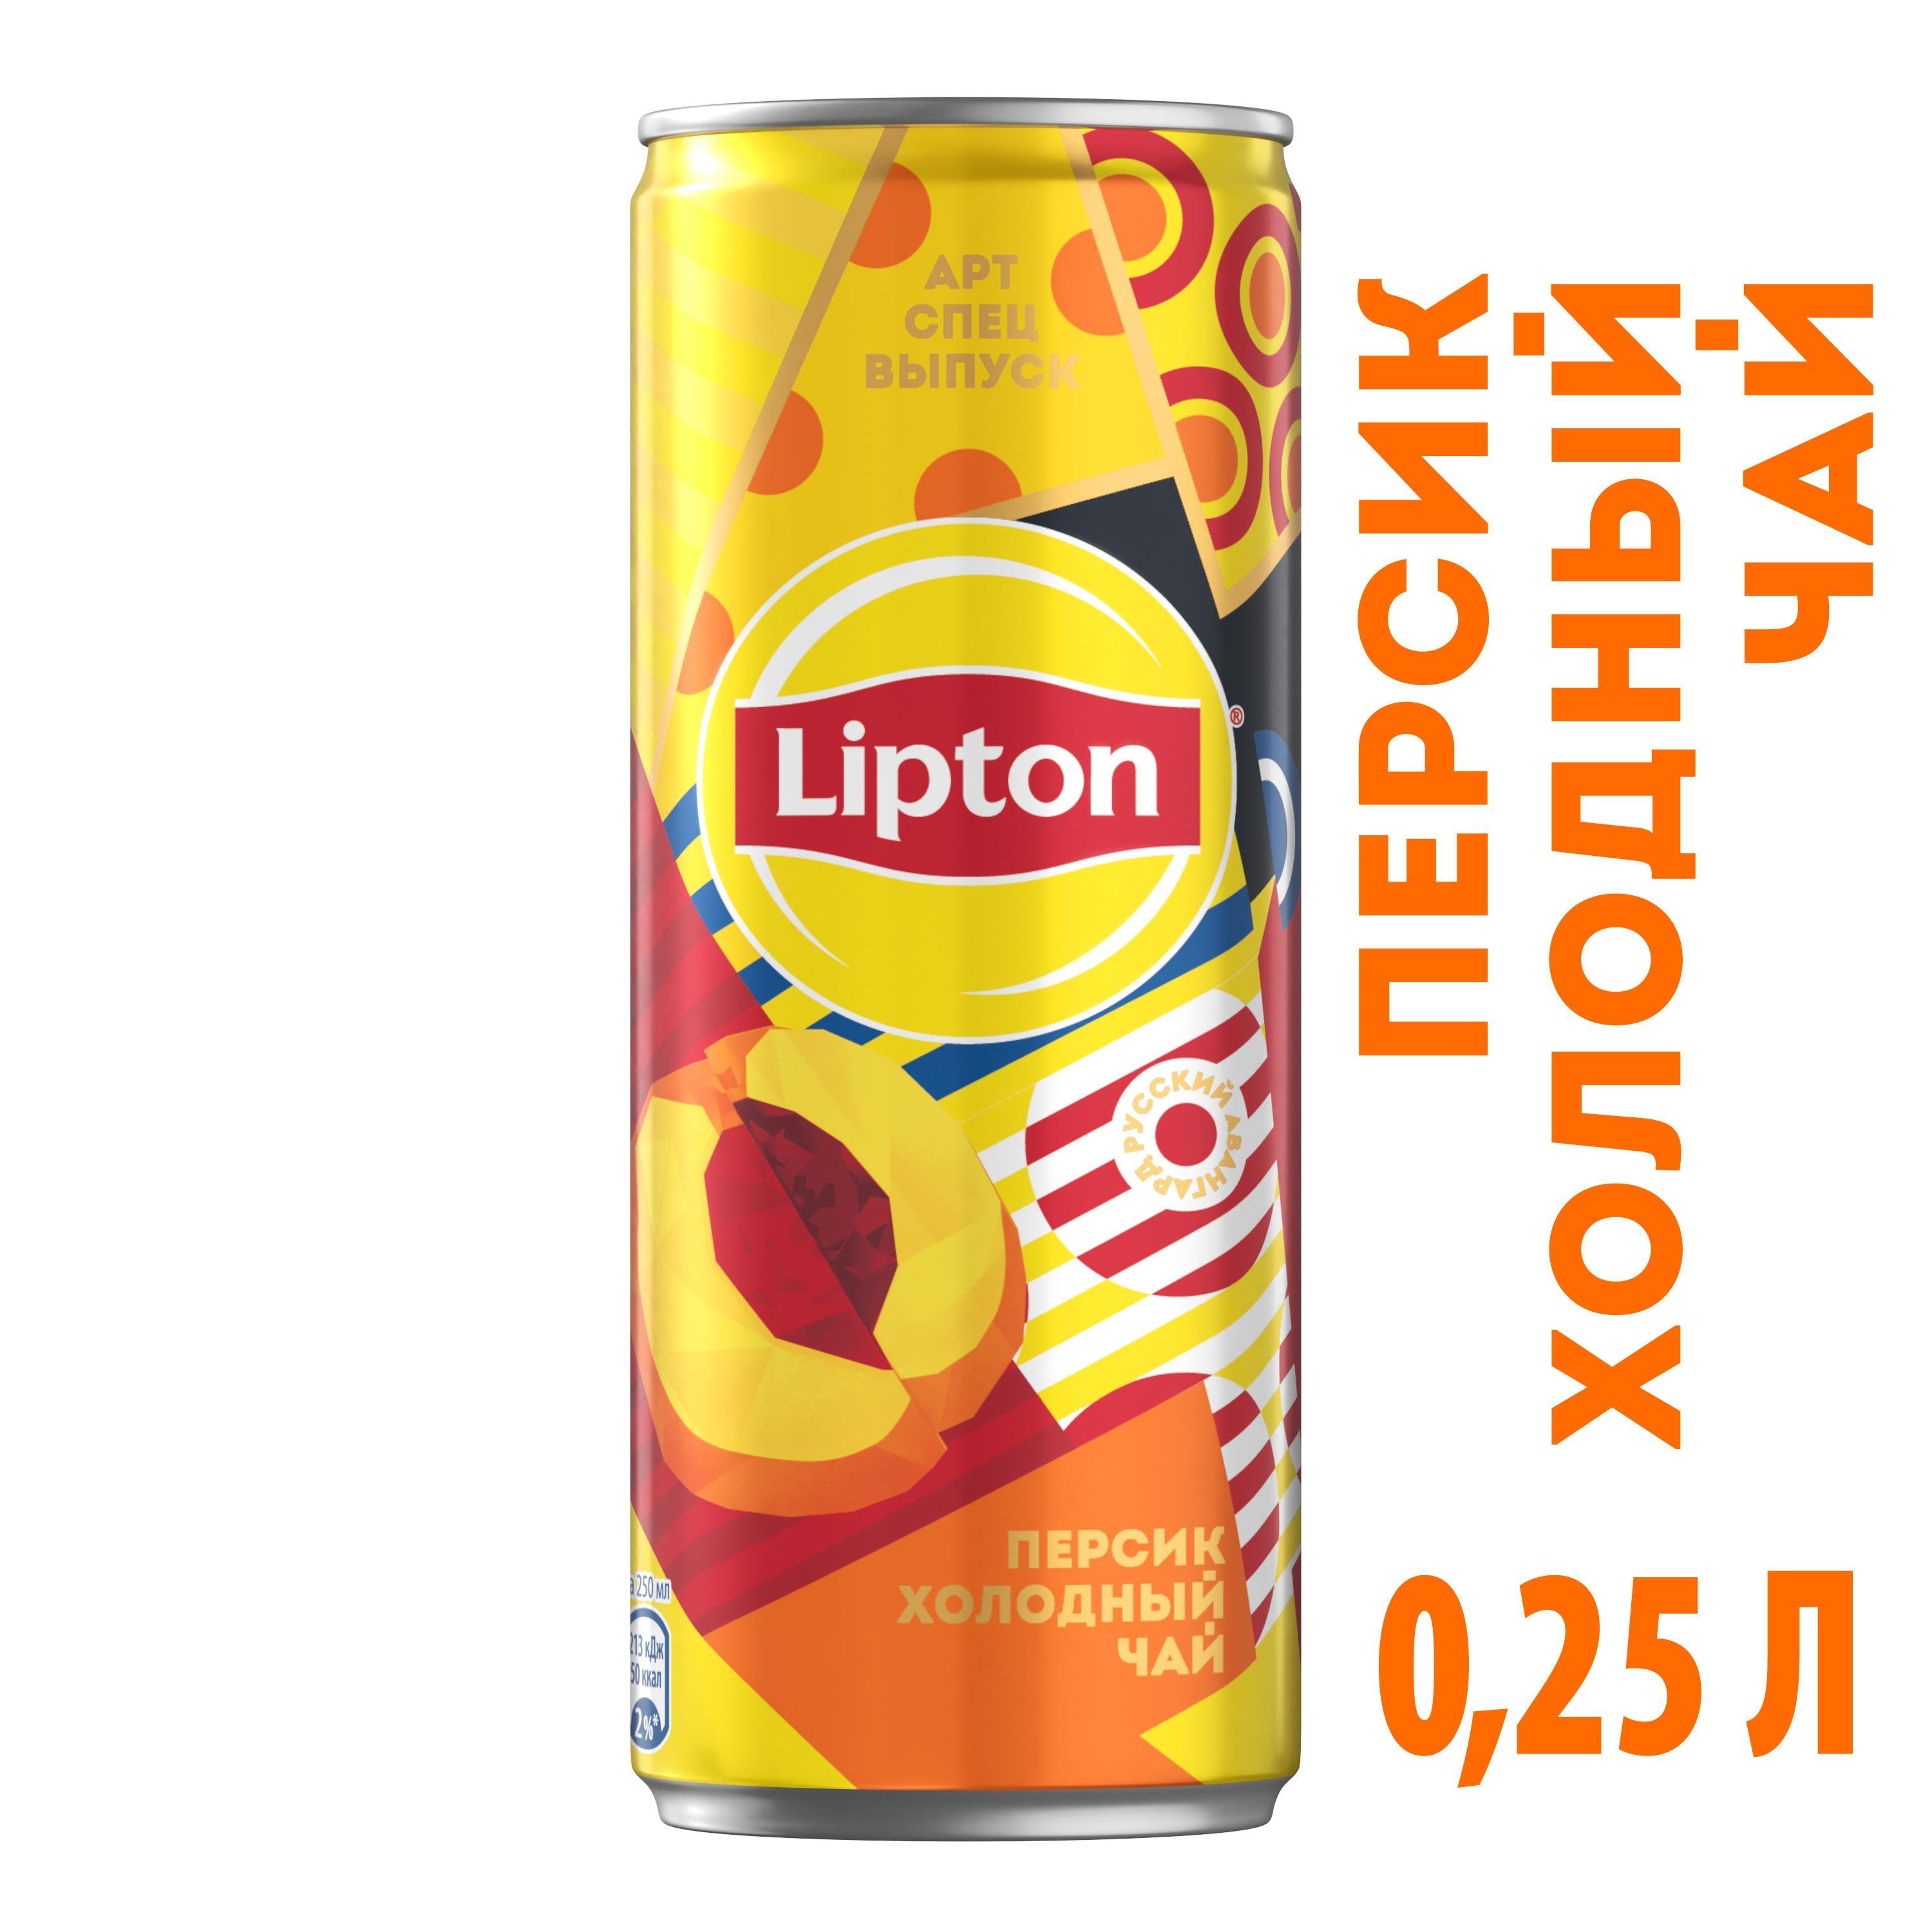 Холодный чай Lipton персик, 250 мл., ж/б